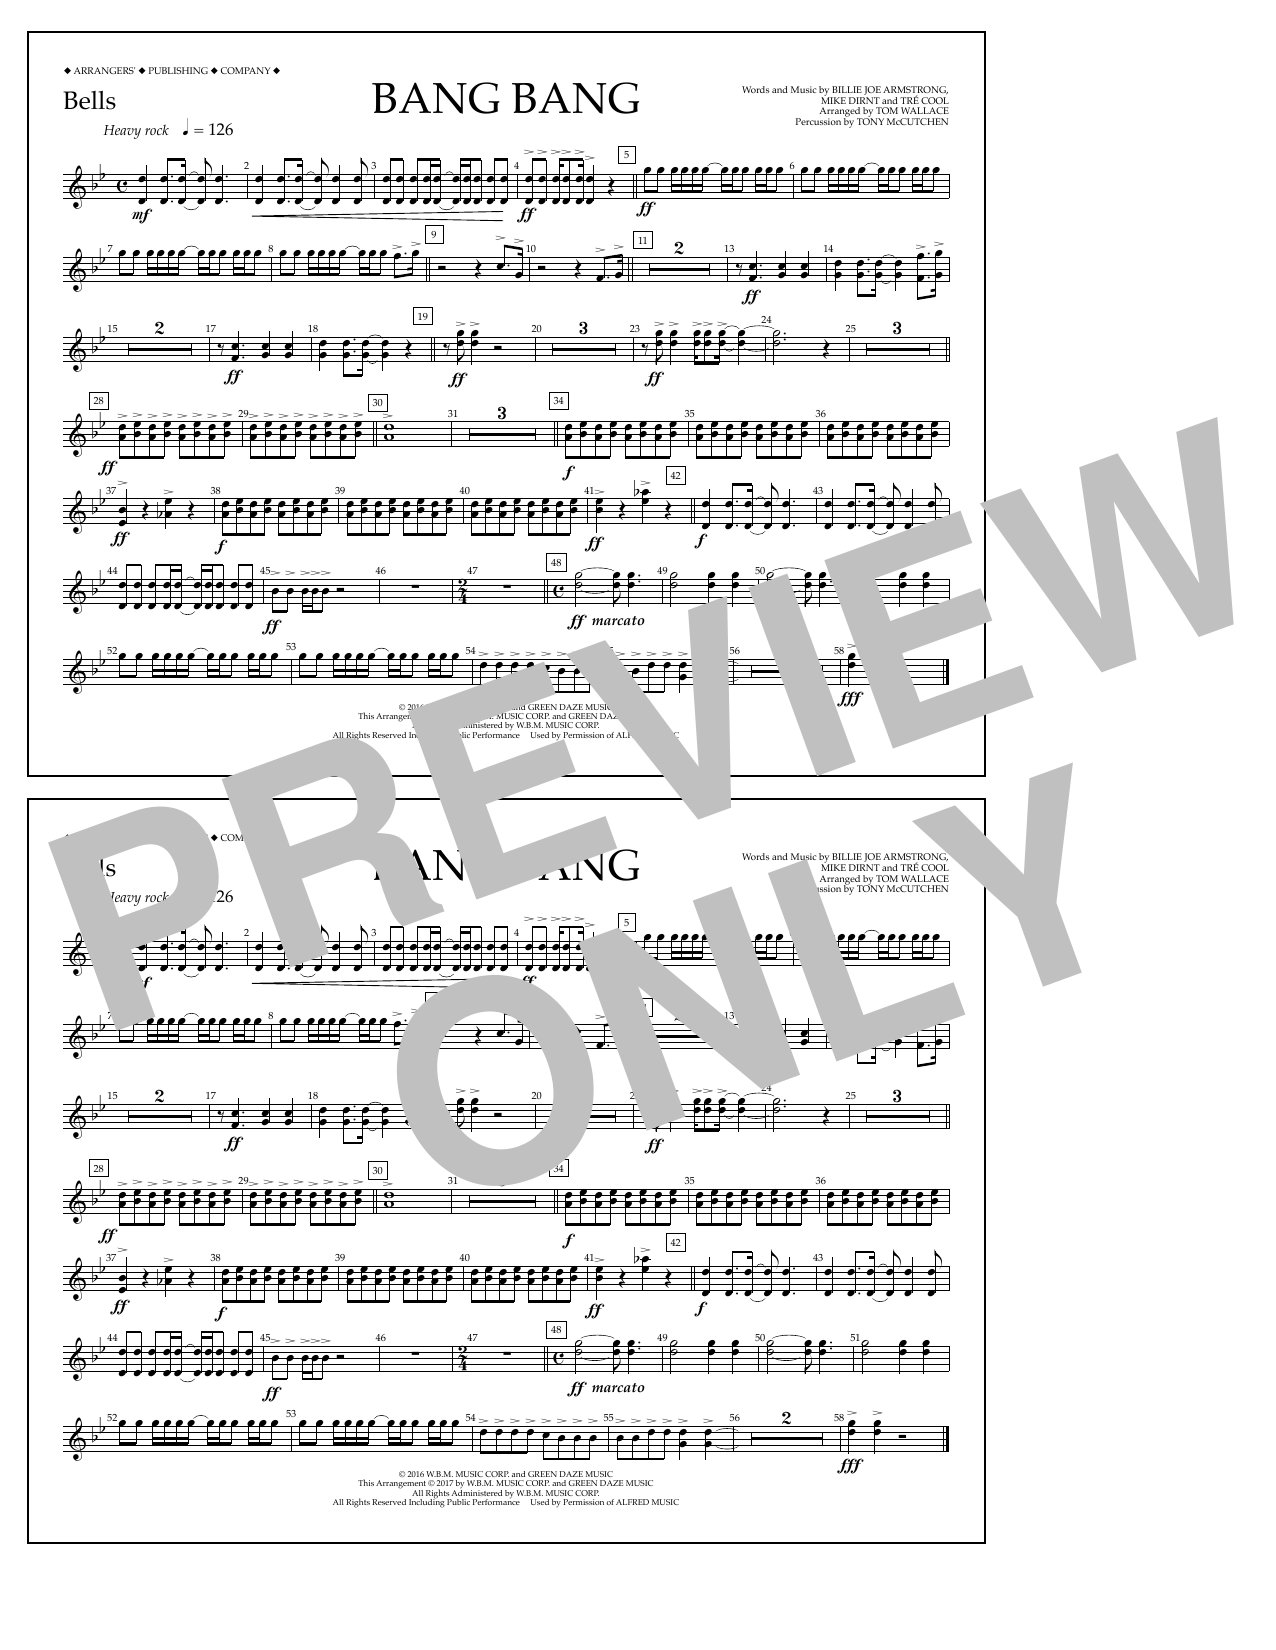 Tom Wallace Bang Bang - Bells Sheet Music Notes & Chords for Marching Band - Download or Print PDF